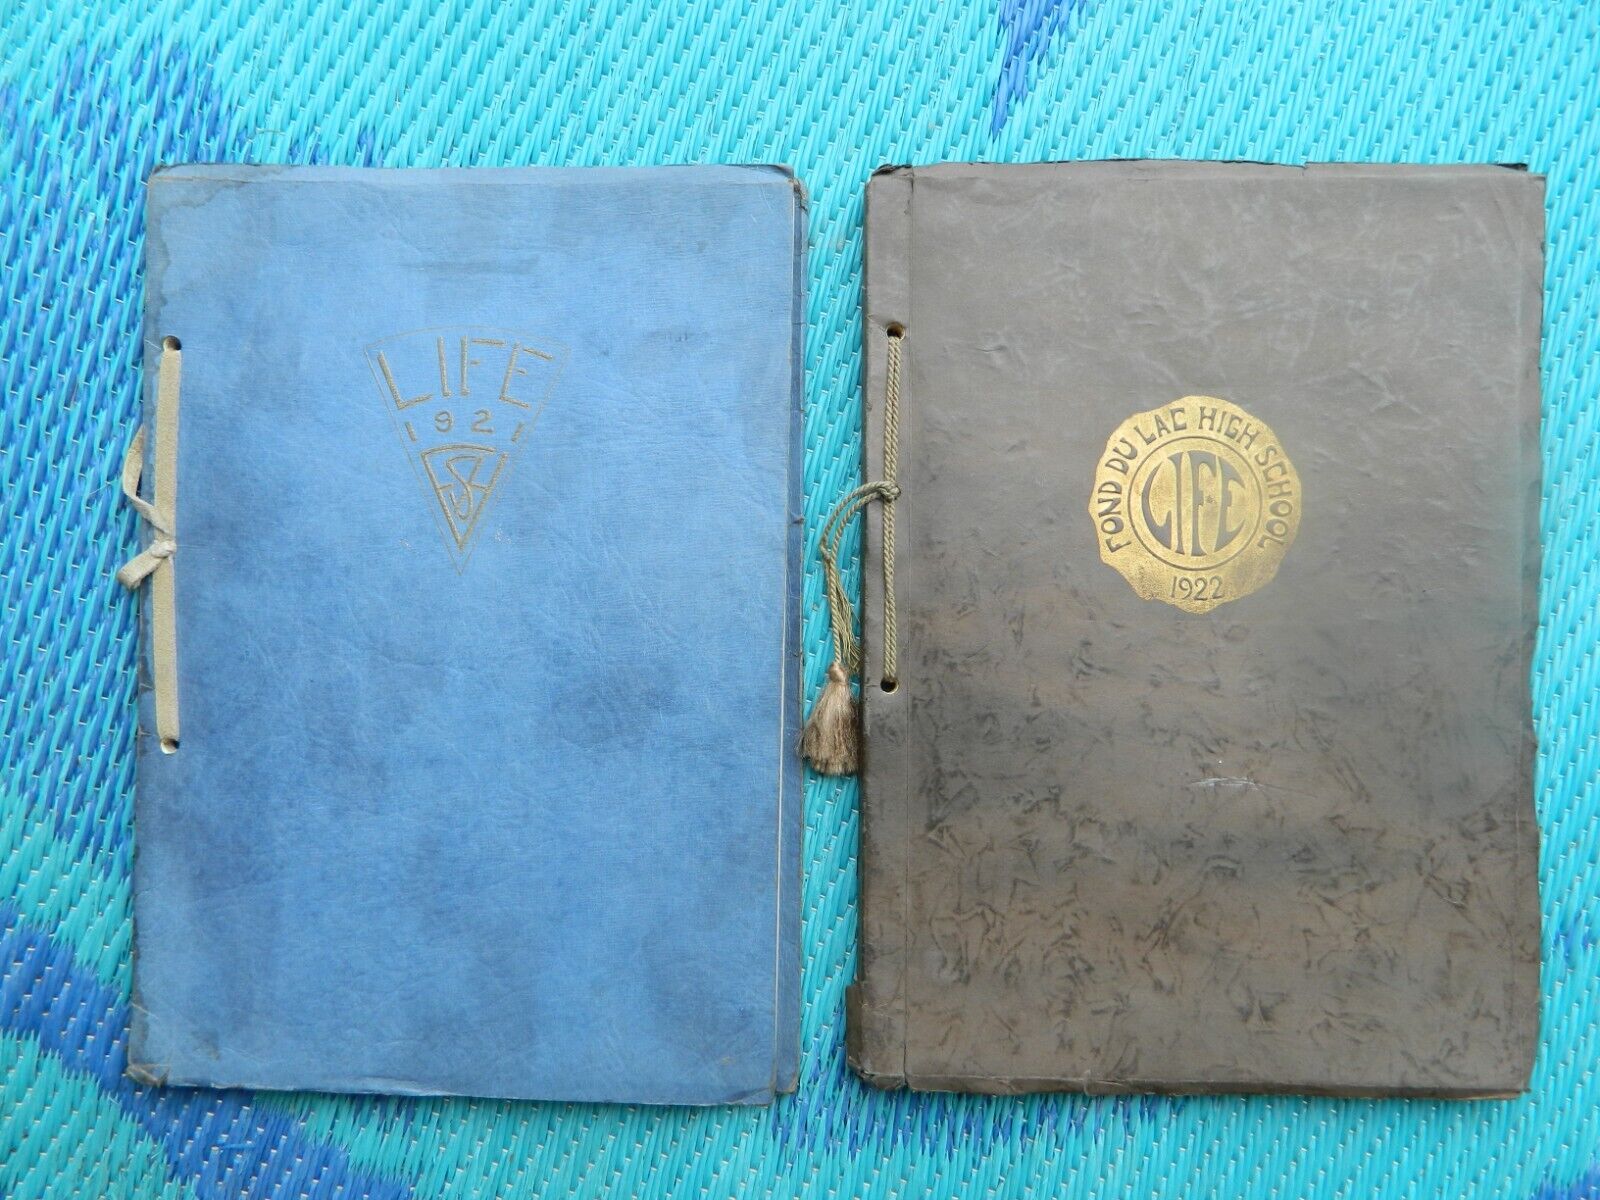 1921 & 1922 FOND DU LAC WISCONSIN HIGH SCHOOL YEAR BOOKS